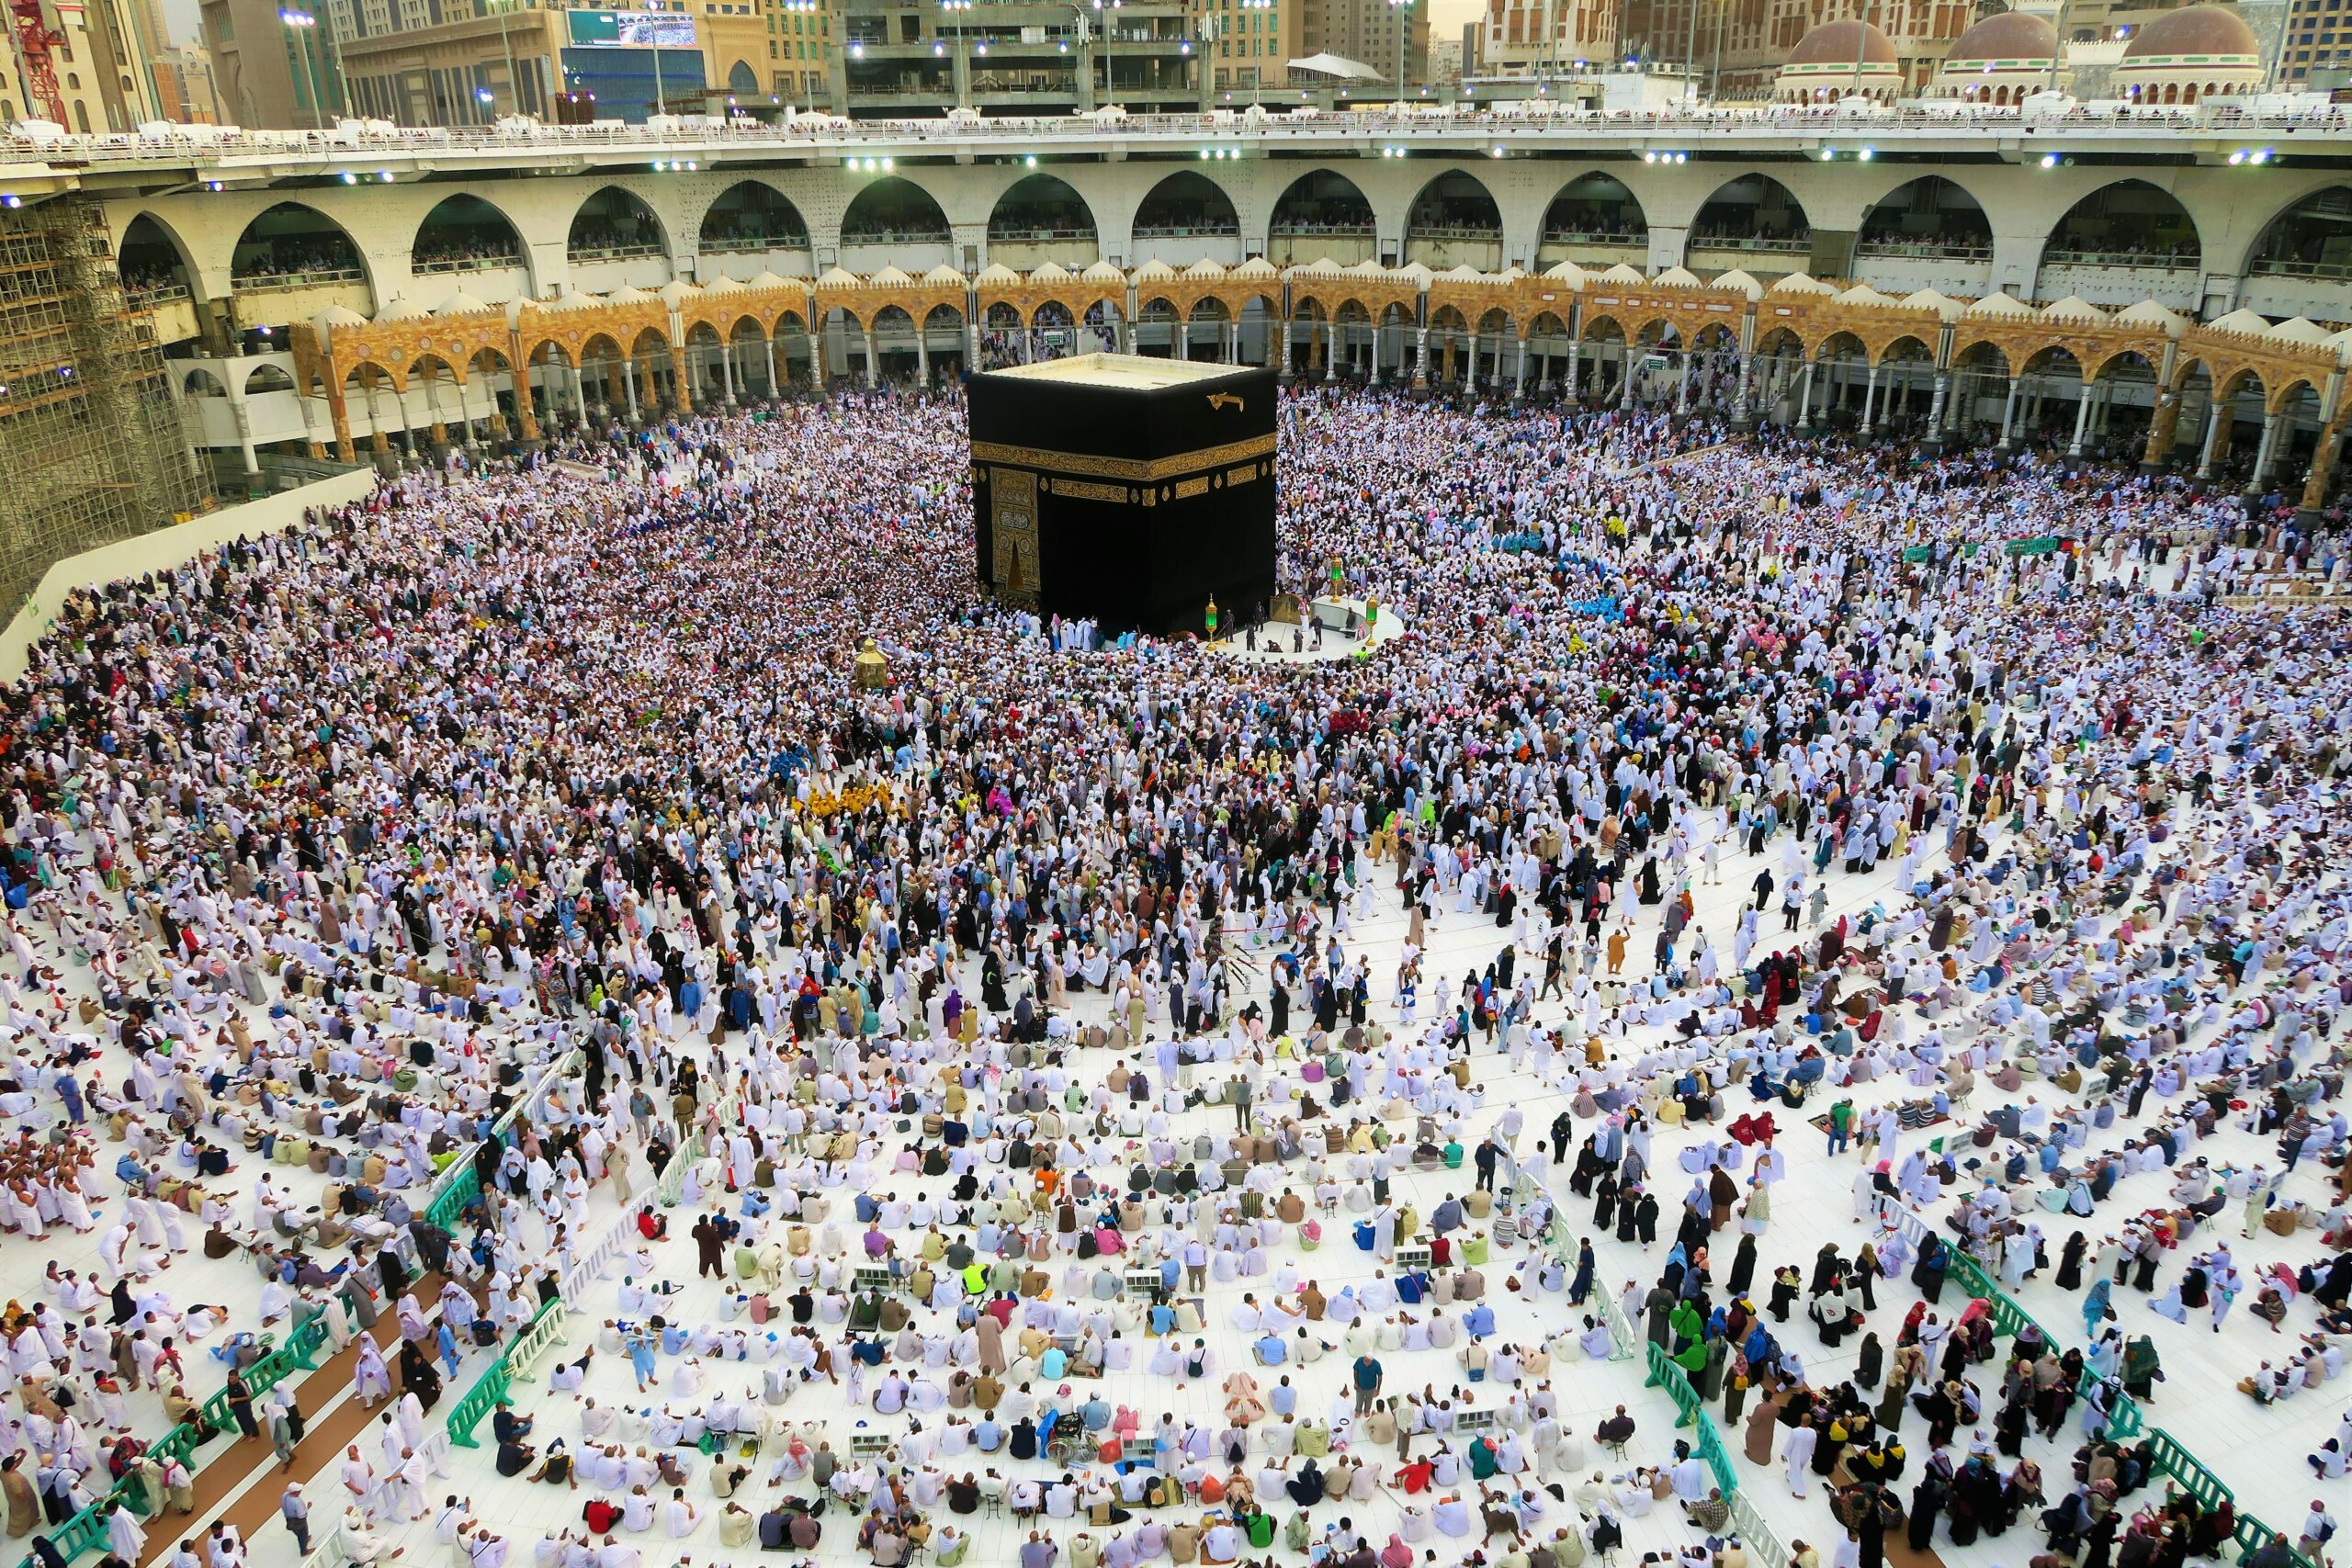 Vista de cima da Kaaba um edifício construído pelo Profeta Abraão envolta de centenas de mulçumanos.